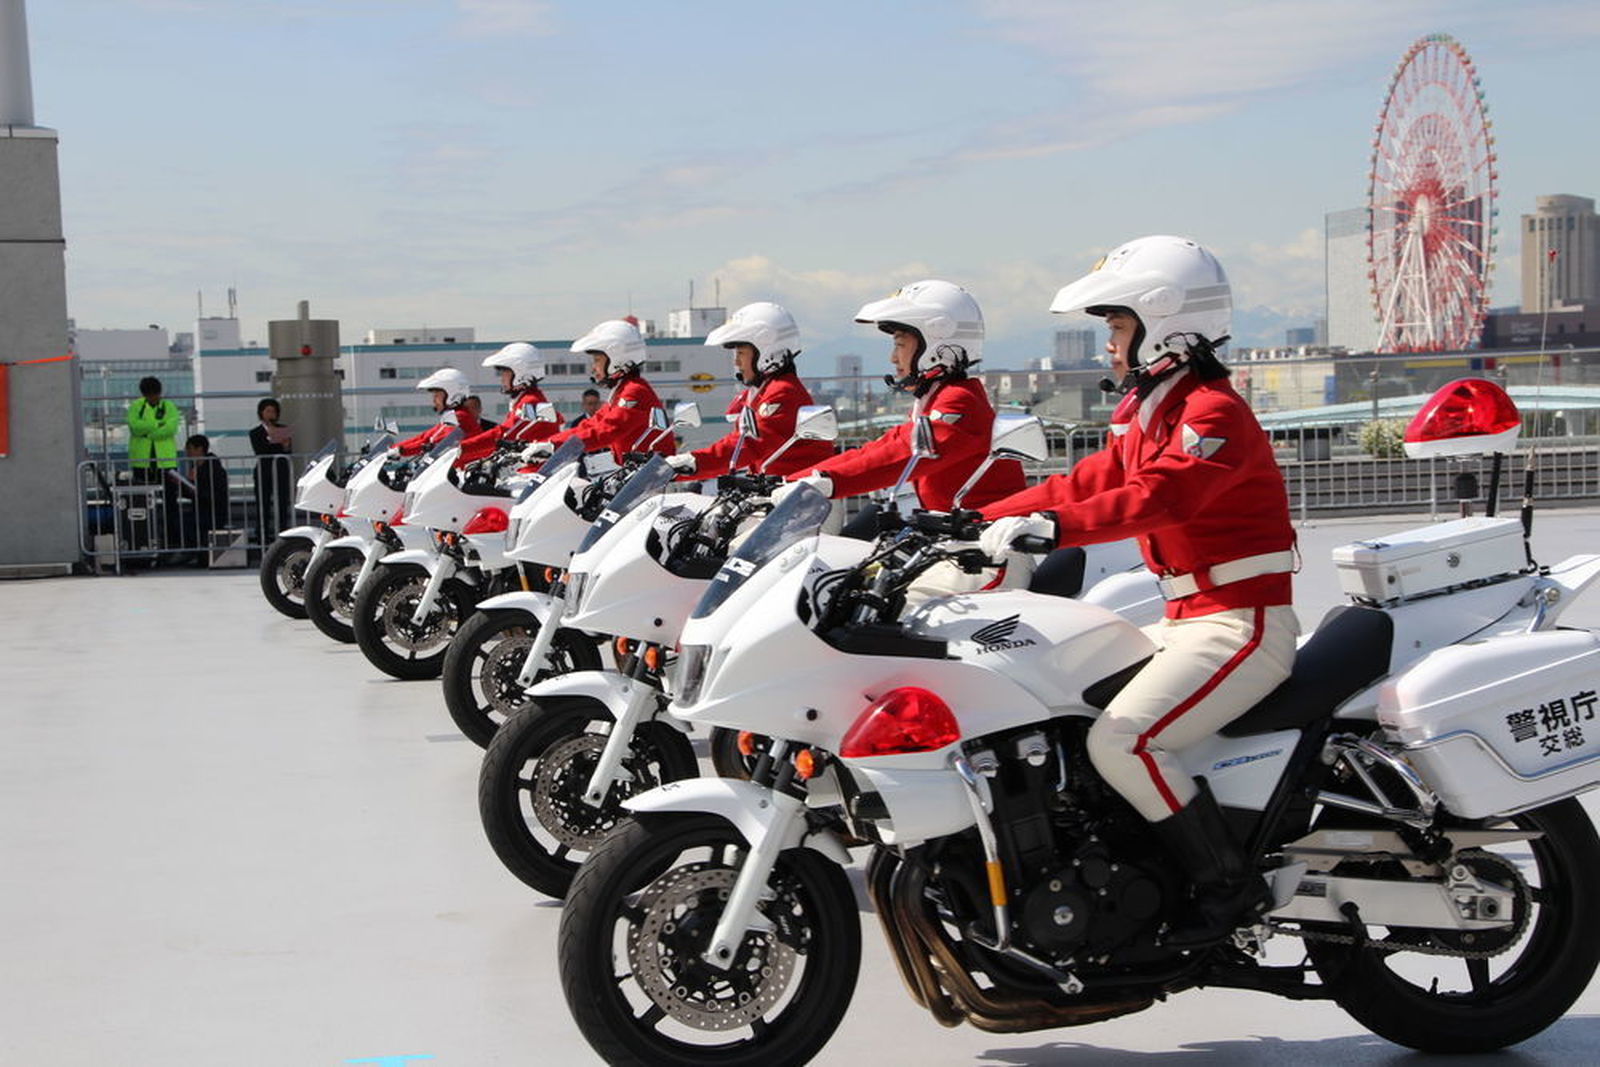 華麗なる警視庁女性白バイ隊クイーンスターズ 東京モーターサイクルショー ウェビックコミュニティ